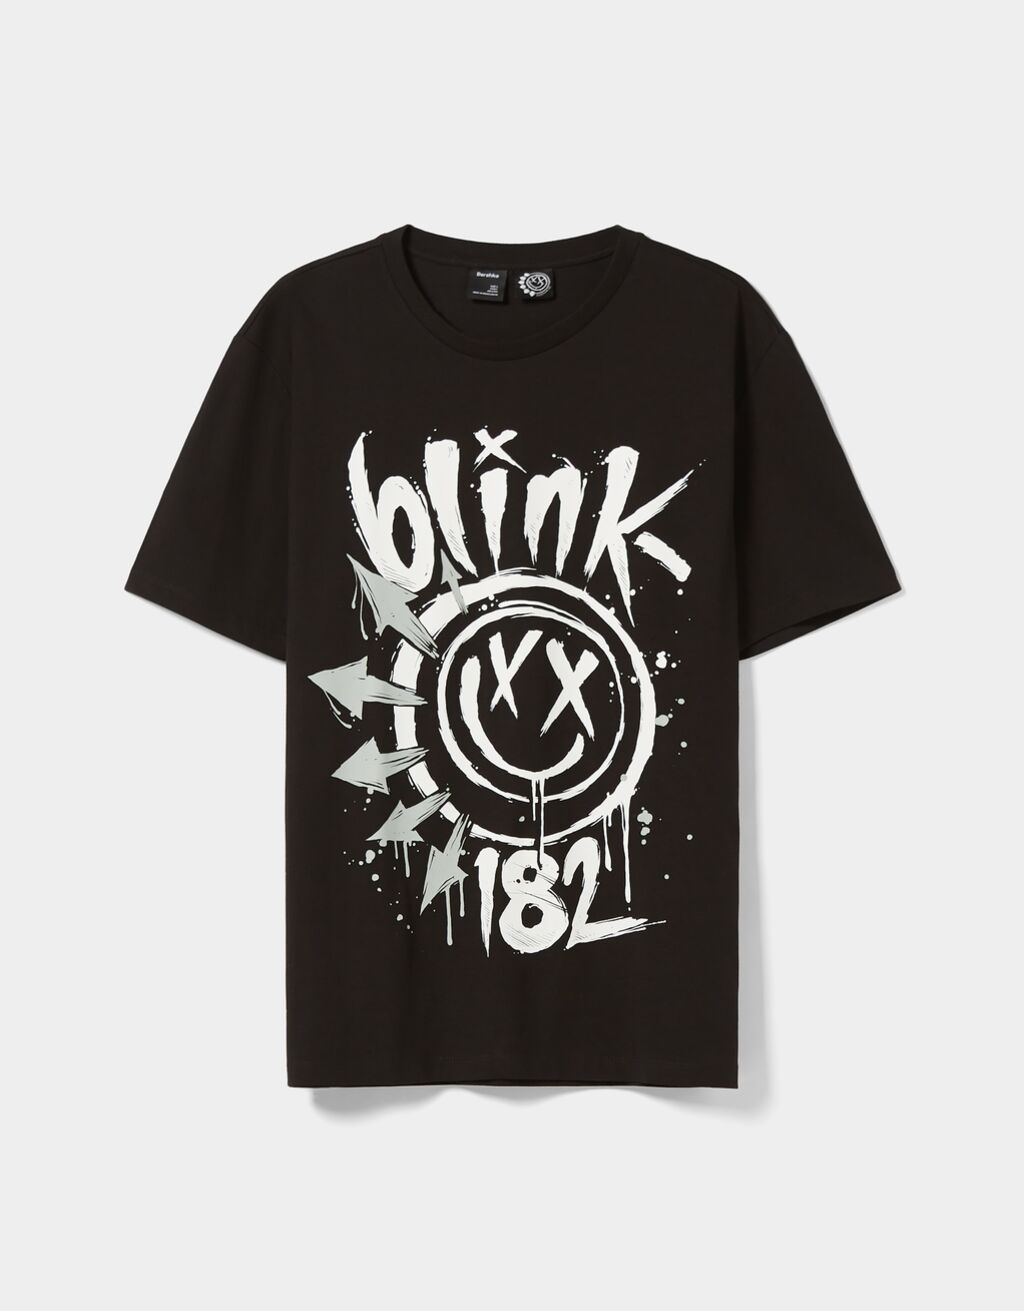 Κοντομάνικη μπλούζα regular fit print Blink 182